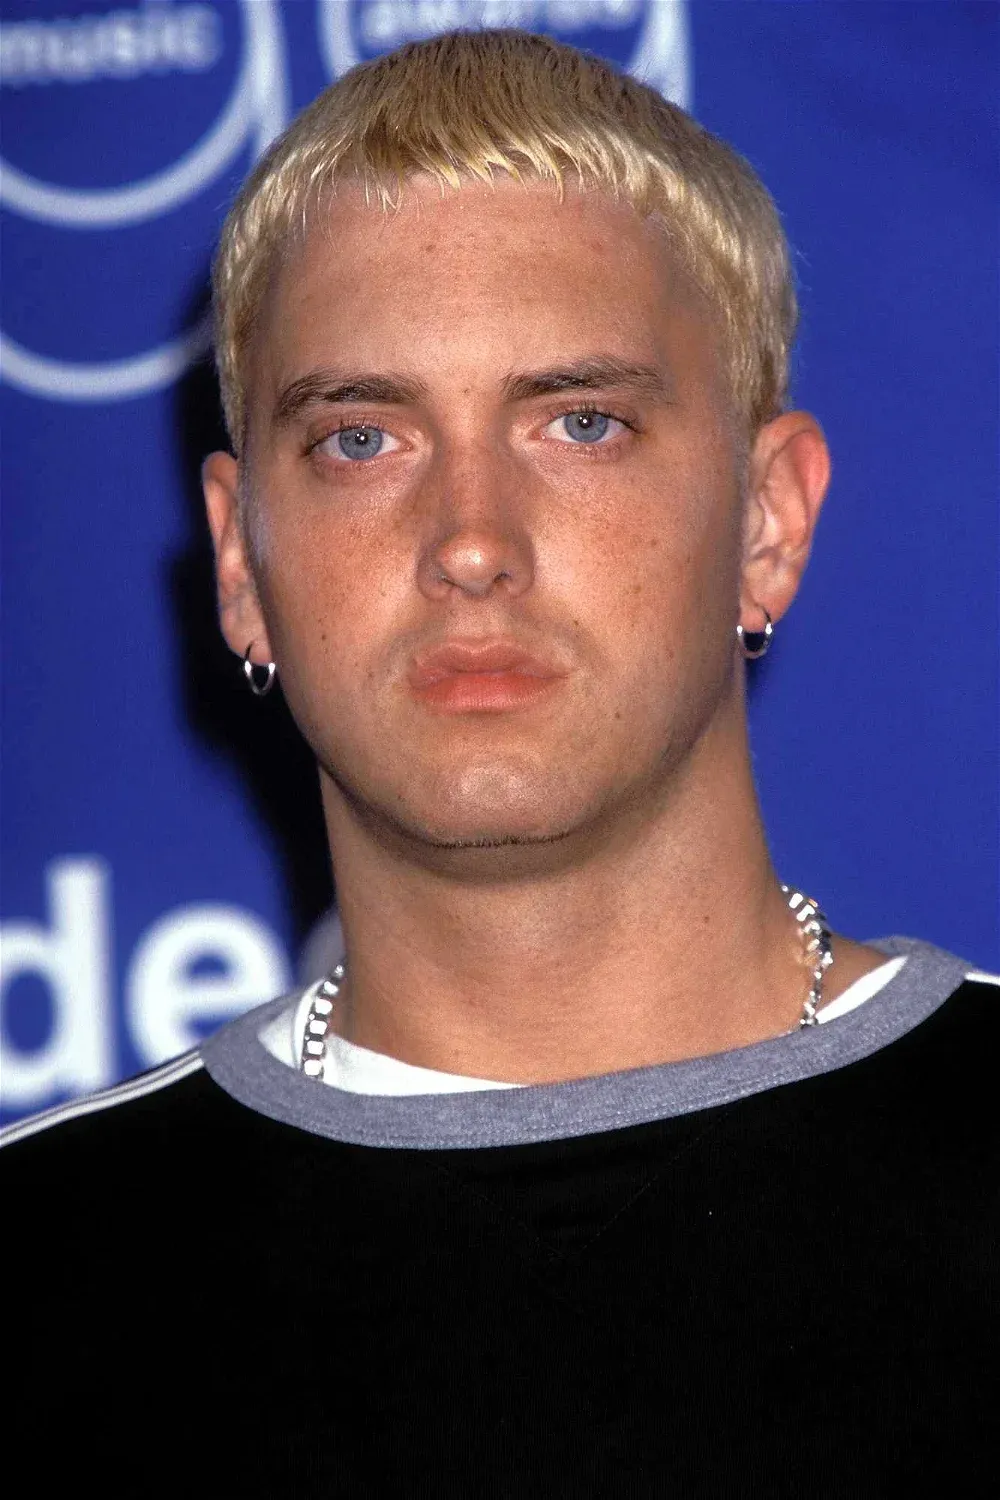 Avatar of Eminem (Marshall Mathers) 